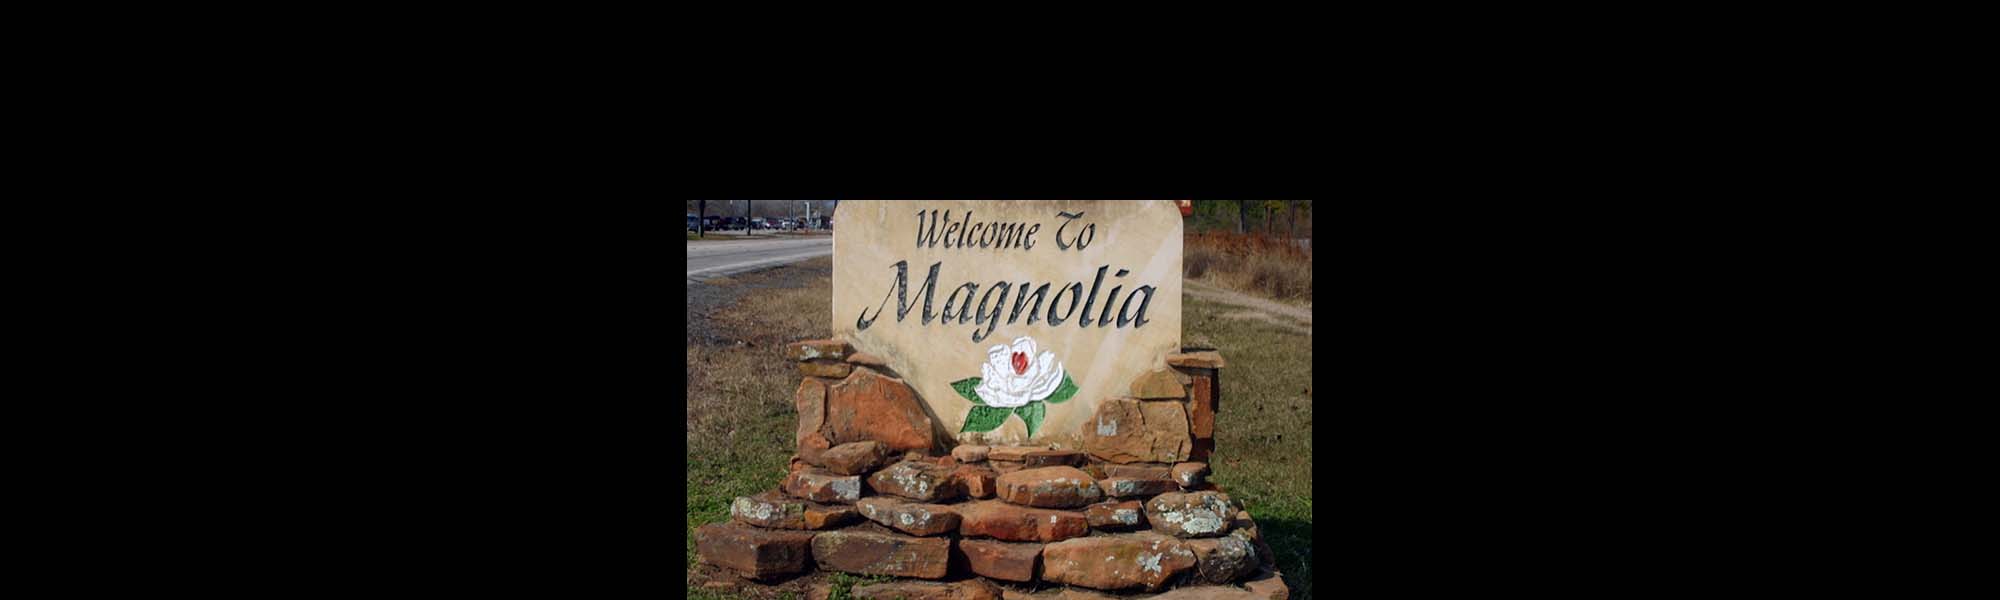 magnolia tx sign